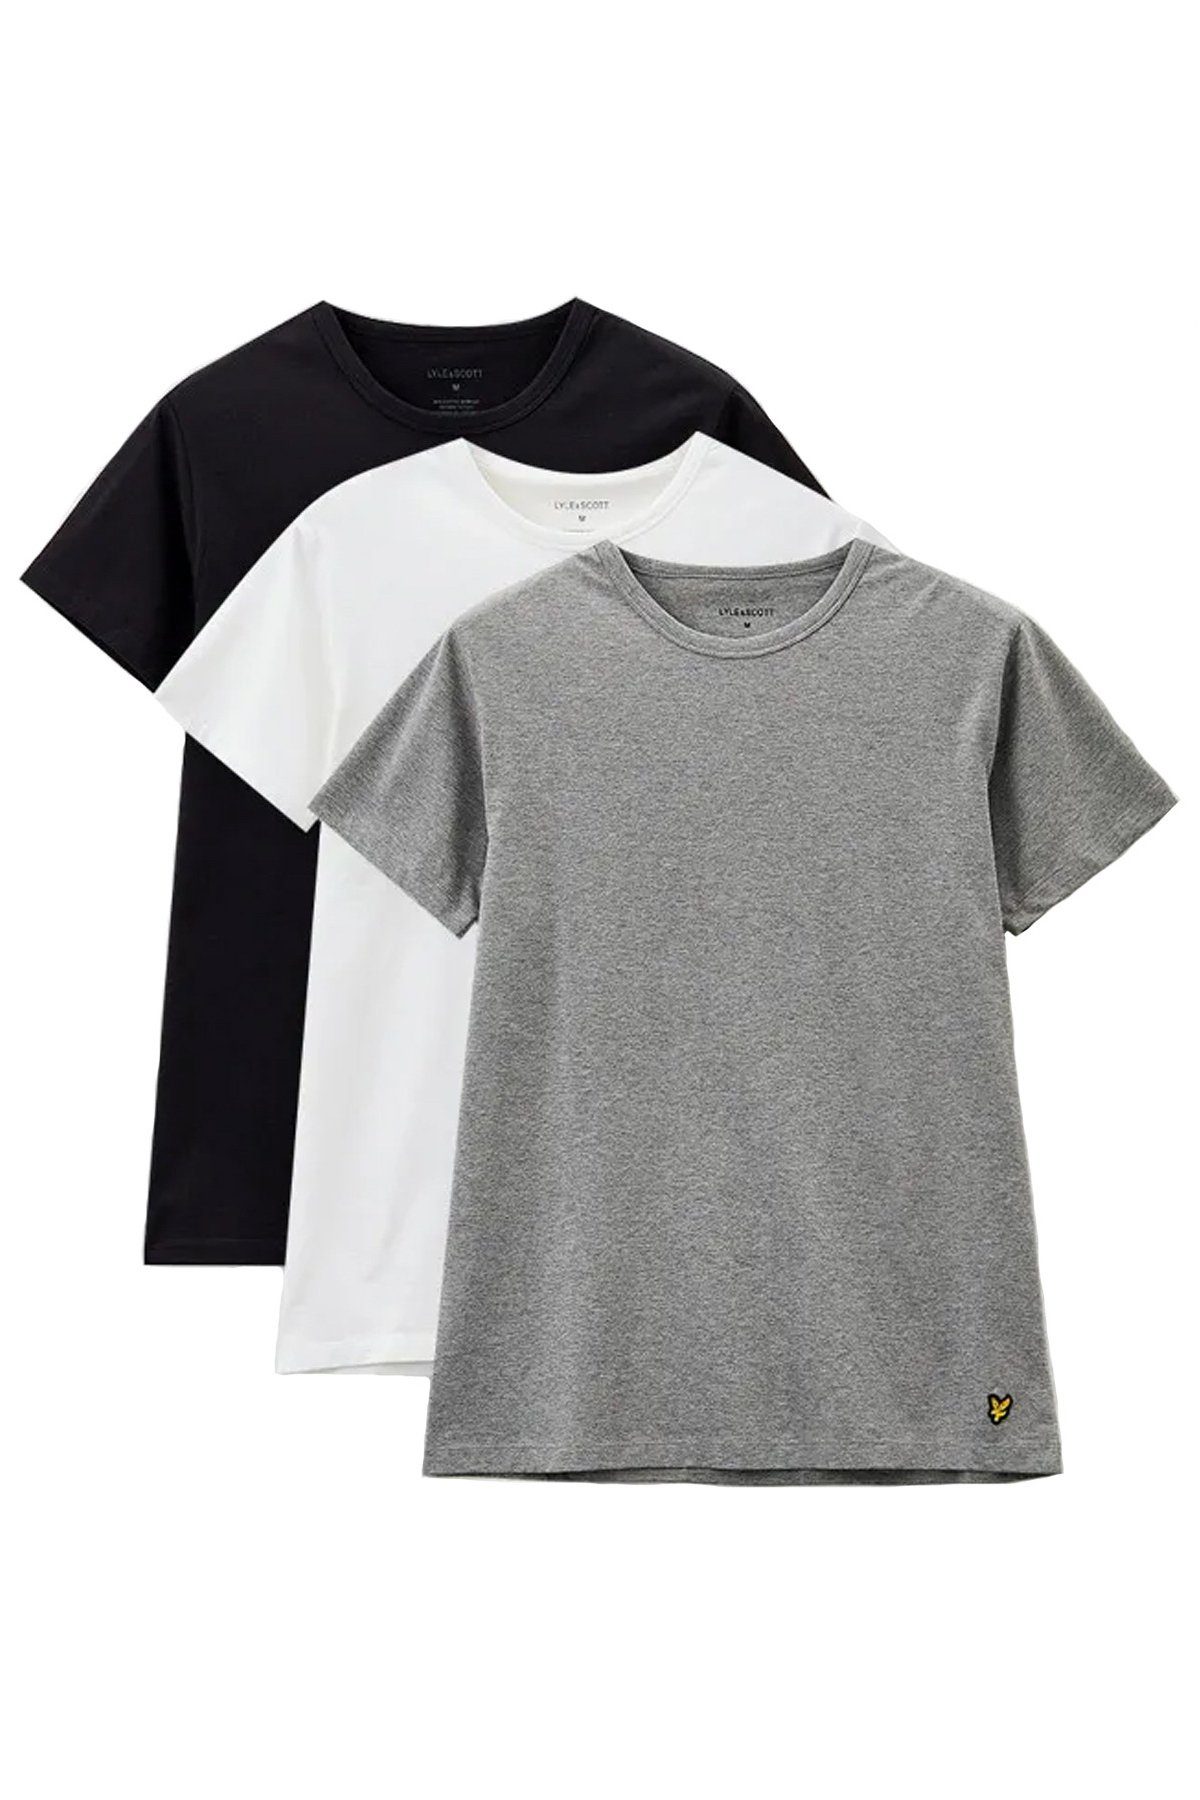 Lyle & Weiß Tiefschwarz/ Mittelgrau Scott (3Er-Set) T-Shirt Farben meliert/ Basic